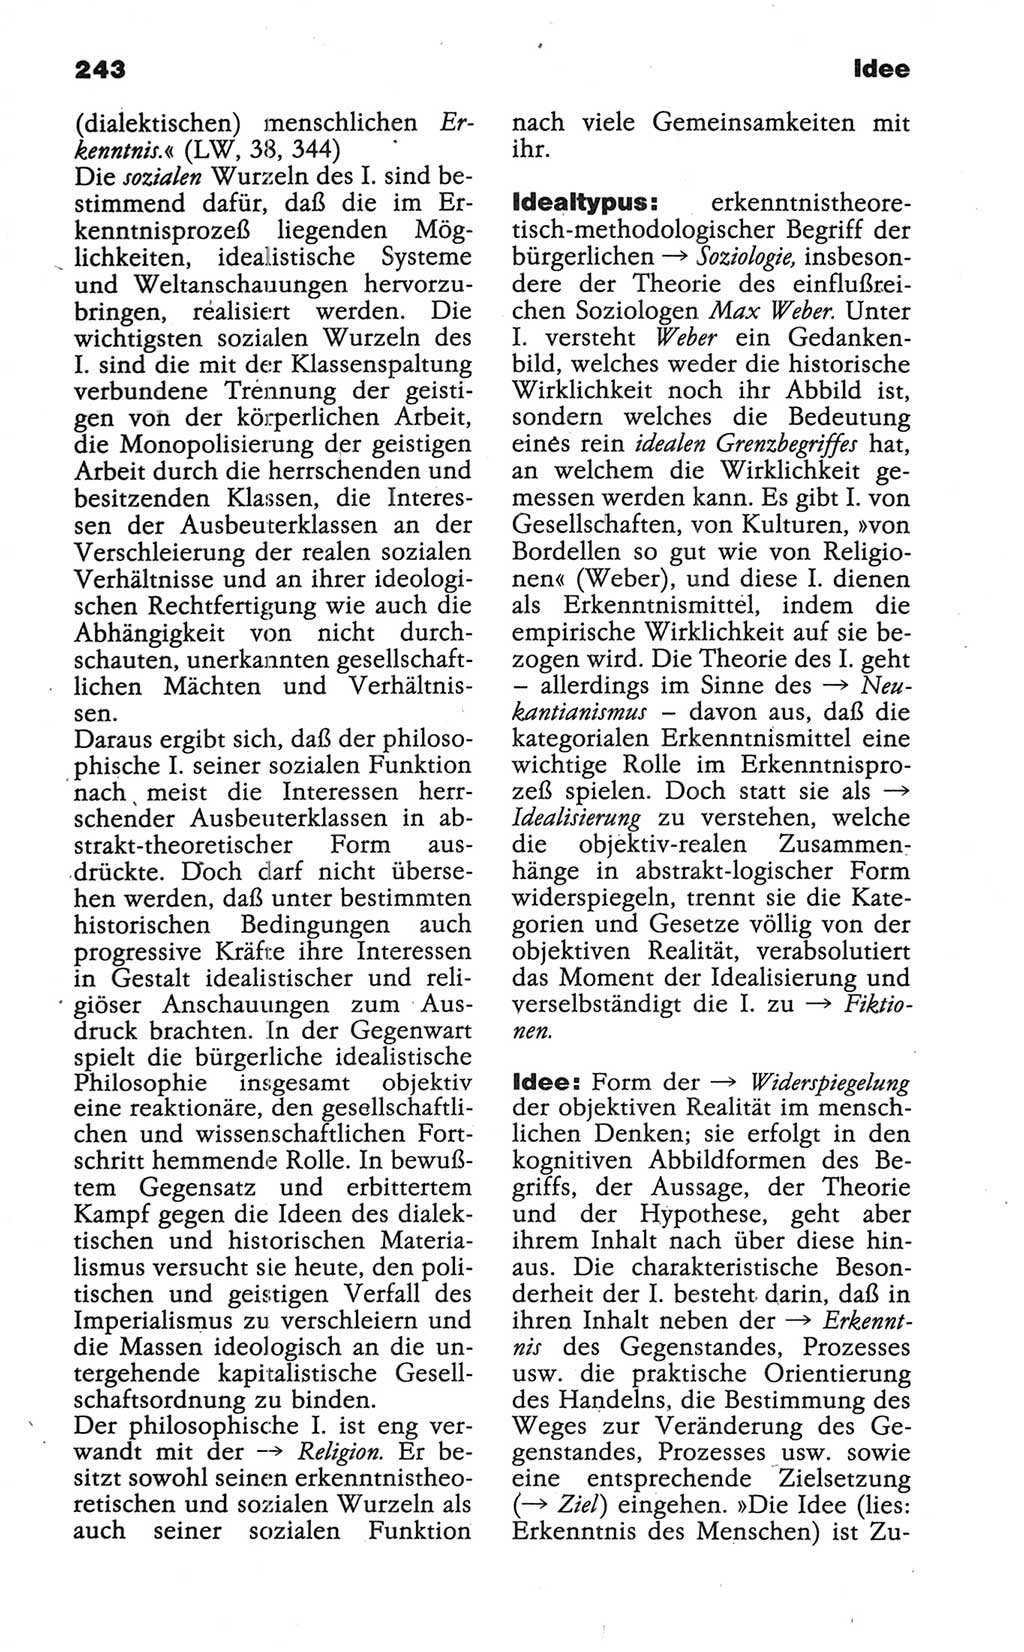 Wörterbuch der marxistisch-leninistischen Philosophie [Deutsche Demokratische Republik (DDR)] 1986, Seite 243 (Wb. ML Phil. DDR 1986, S. 243)